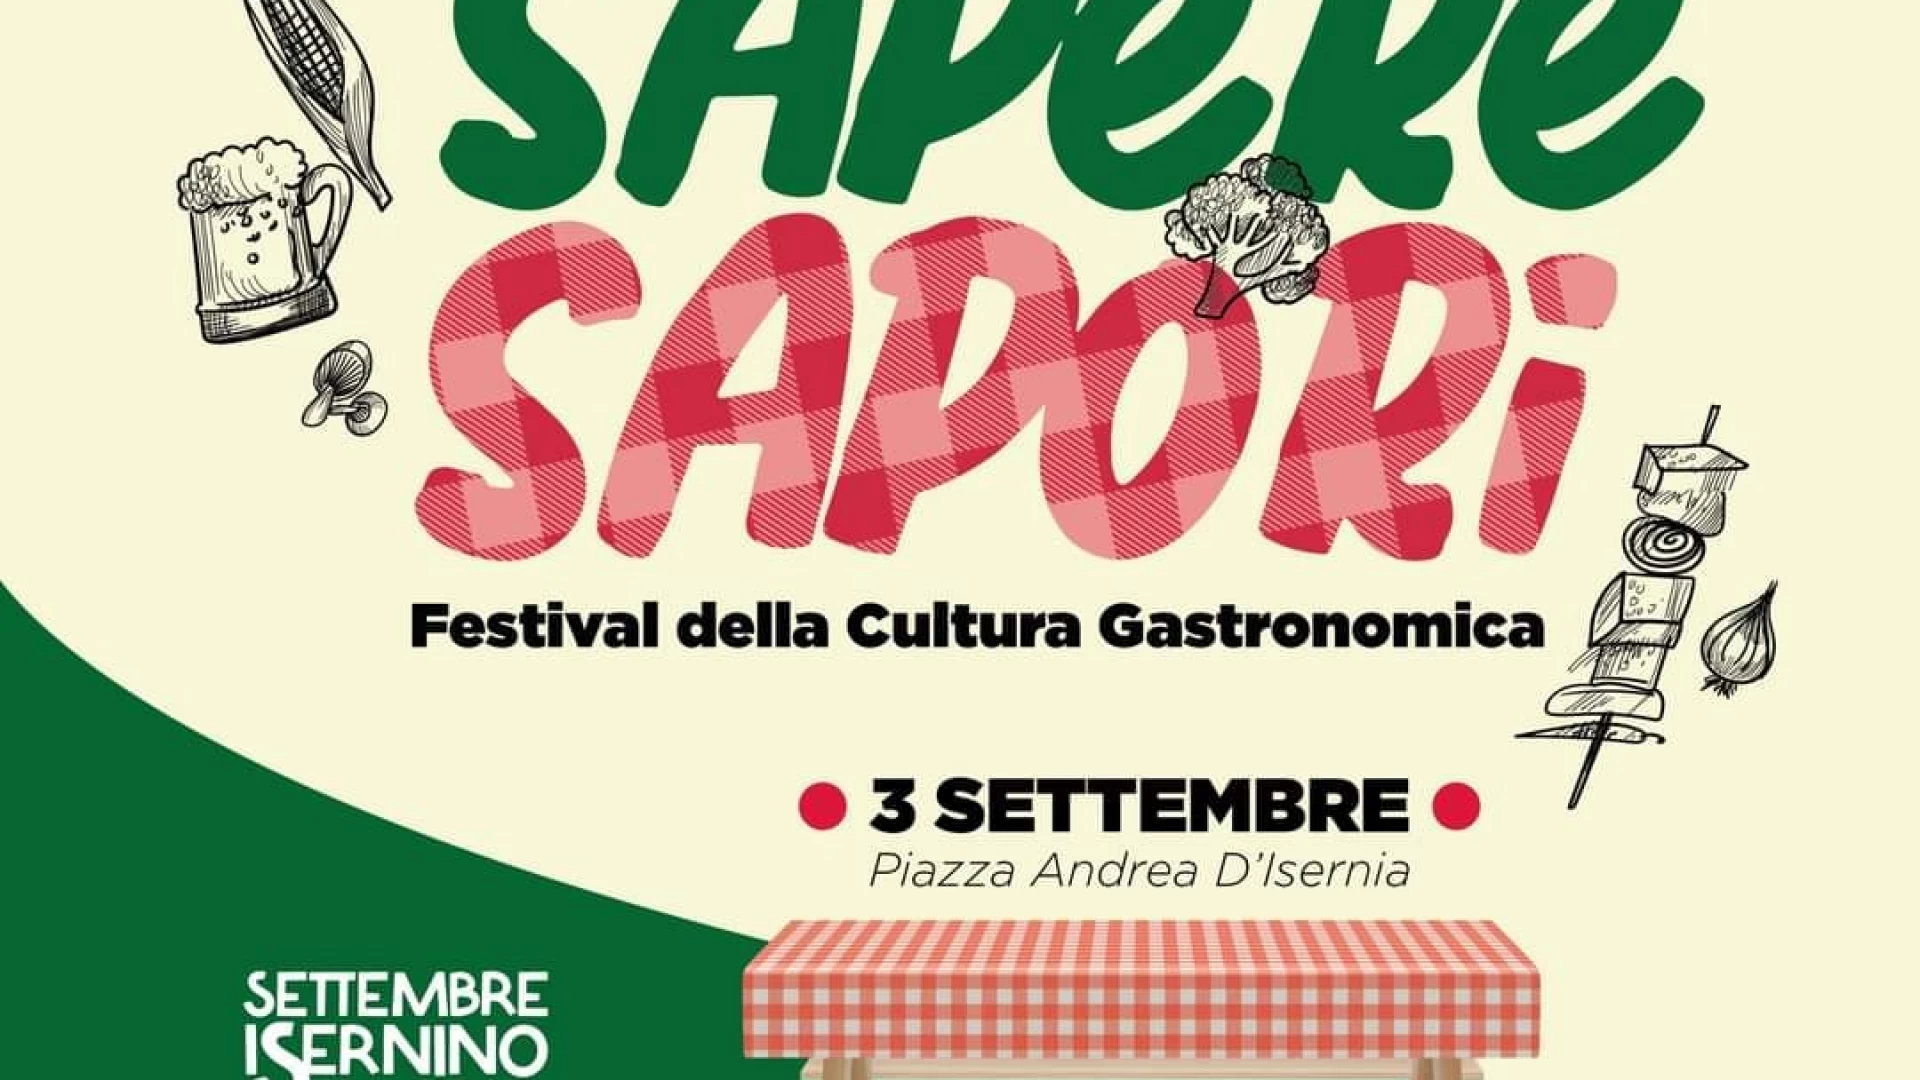 Isernia: sabato 3 settembre torna il festival “Sapere Sapori”. Appuntamento in piazza Andrea d’Isernia dalle ore 18.